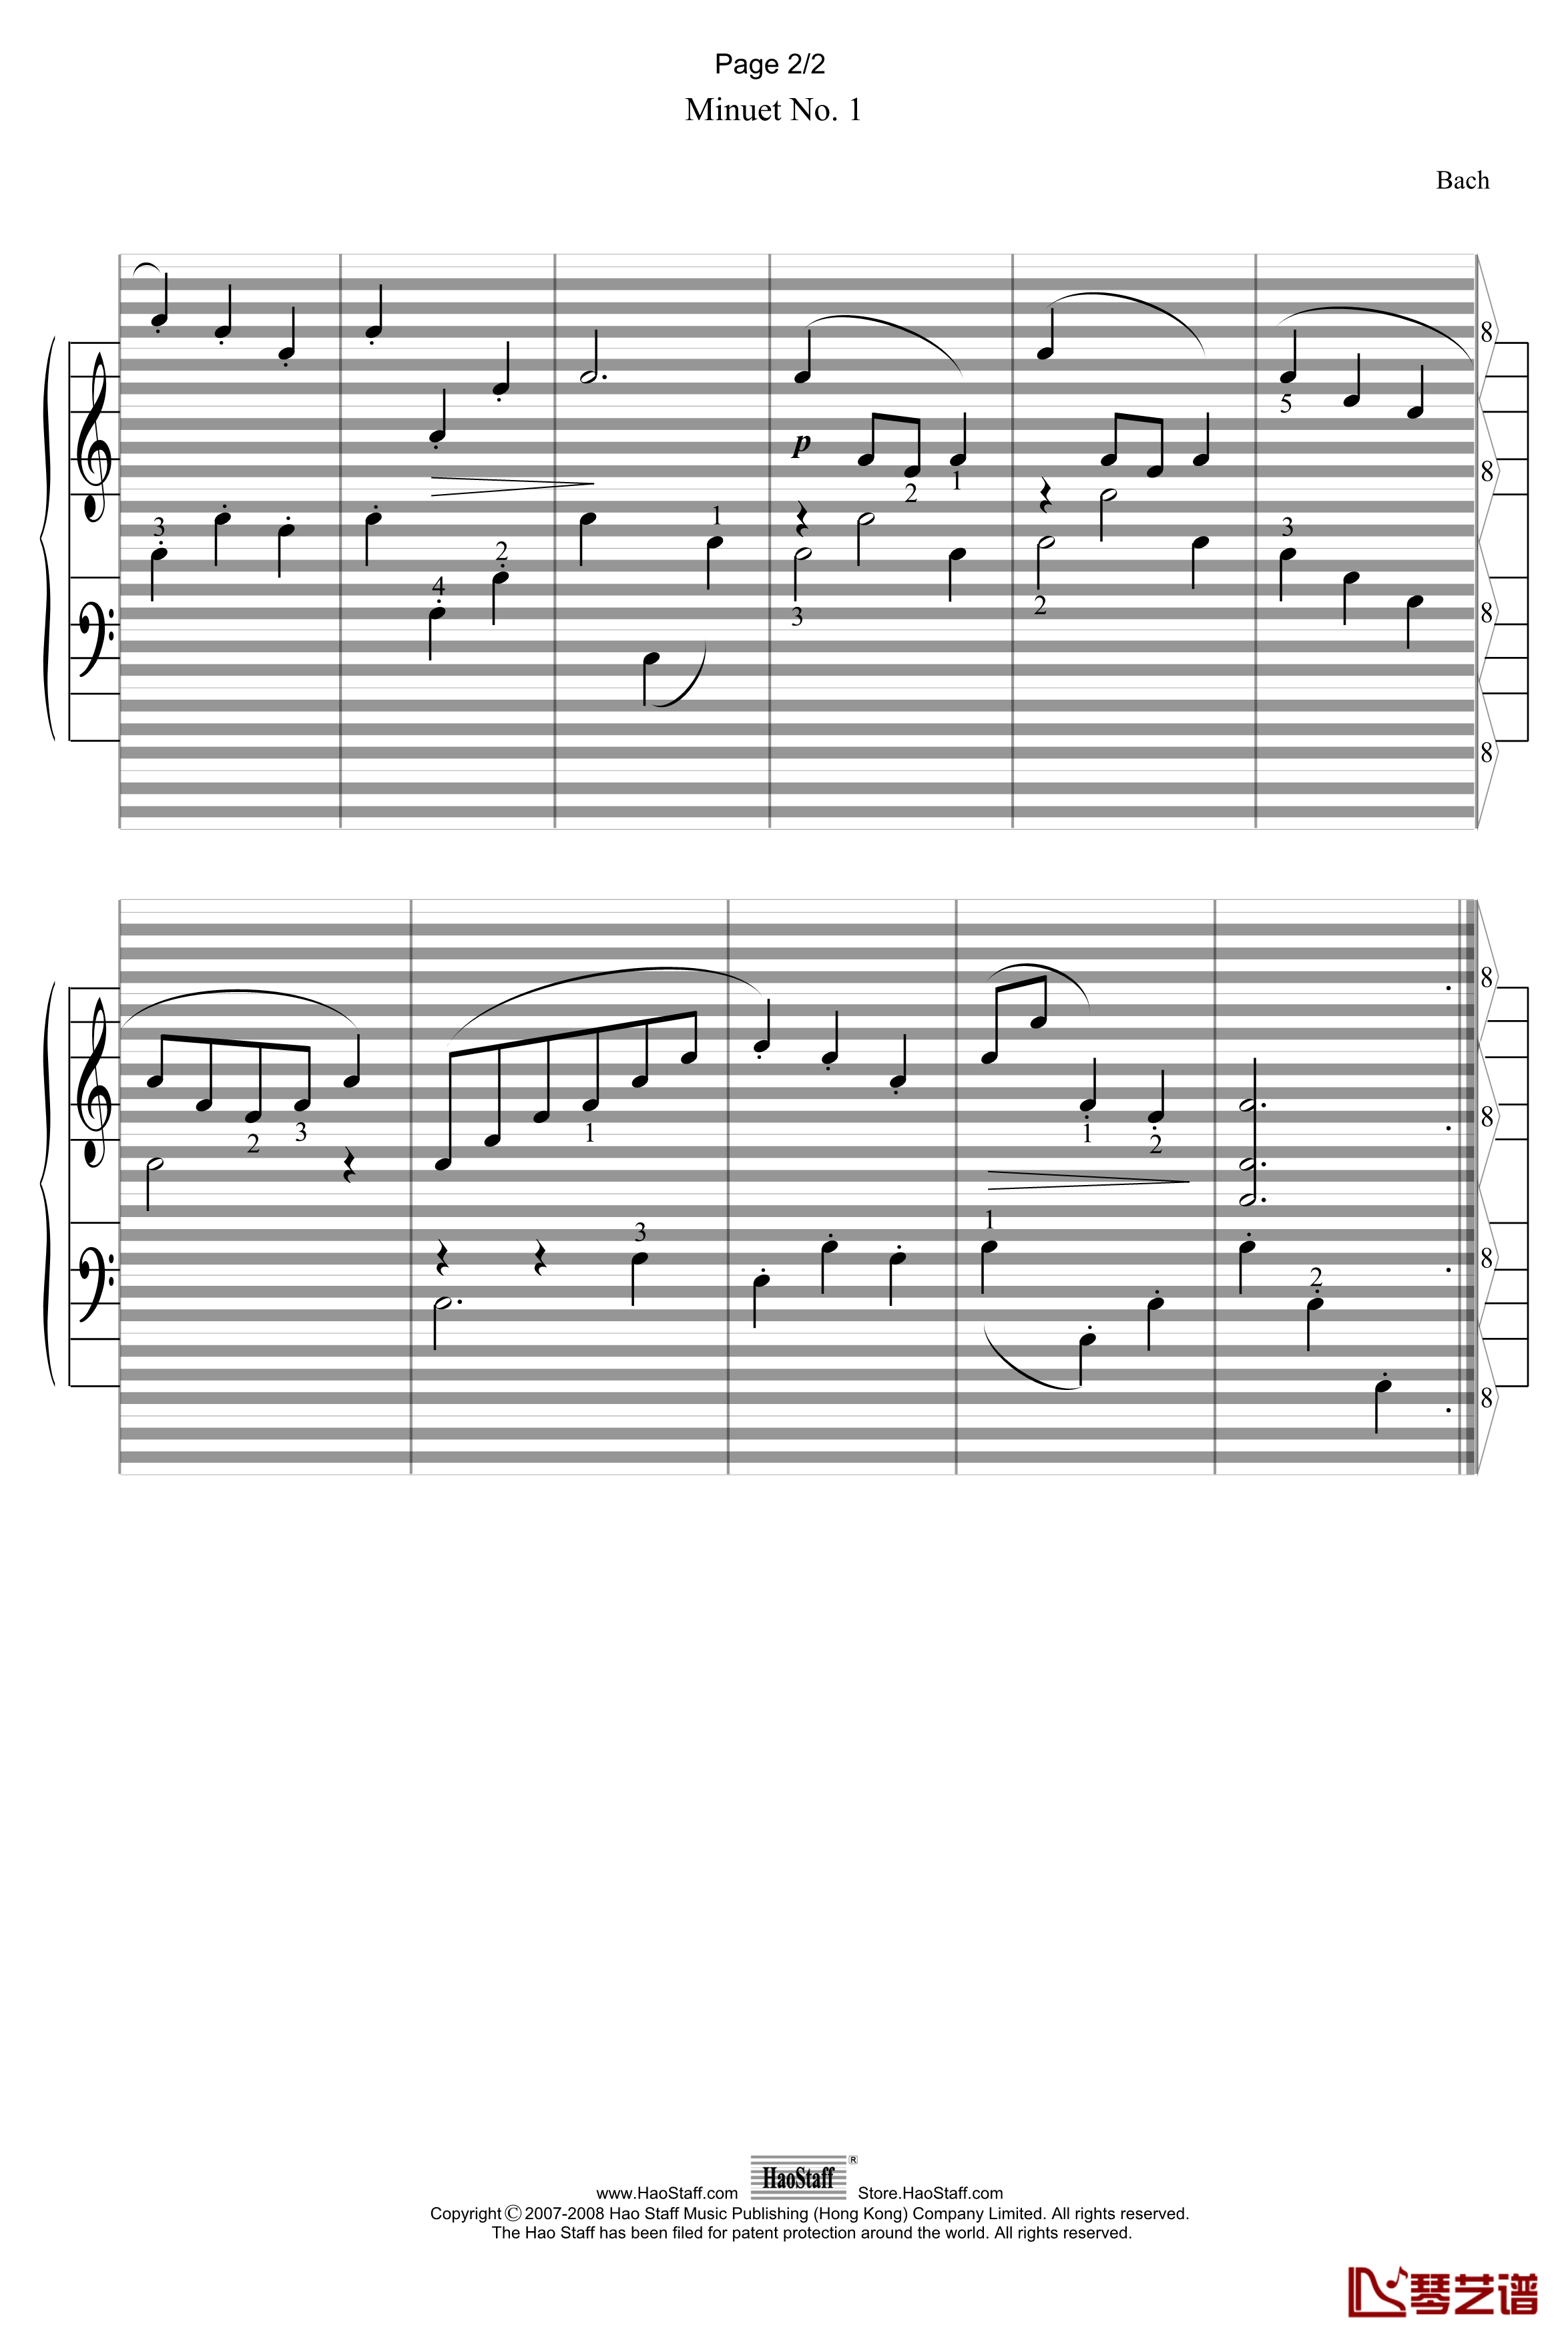 小步舞曲Minuet钢琴谱-郝氏谱-巴赫-P.E.Bach2